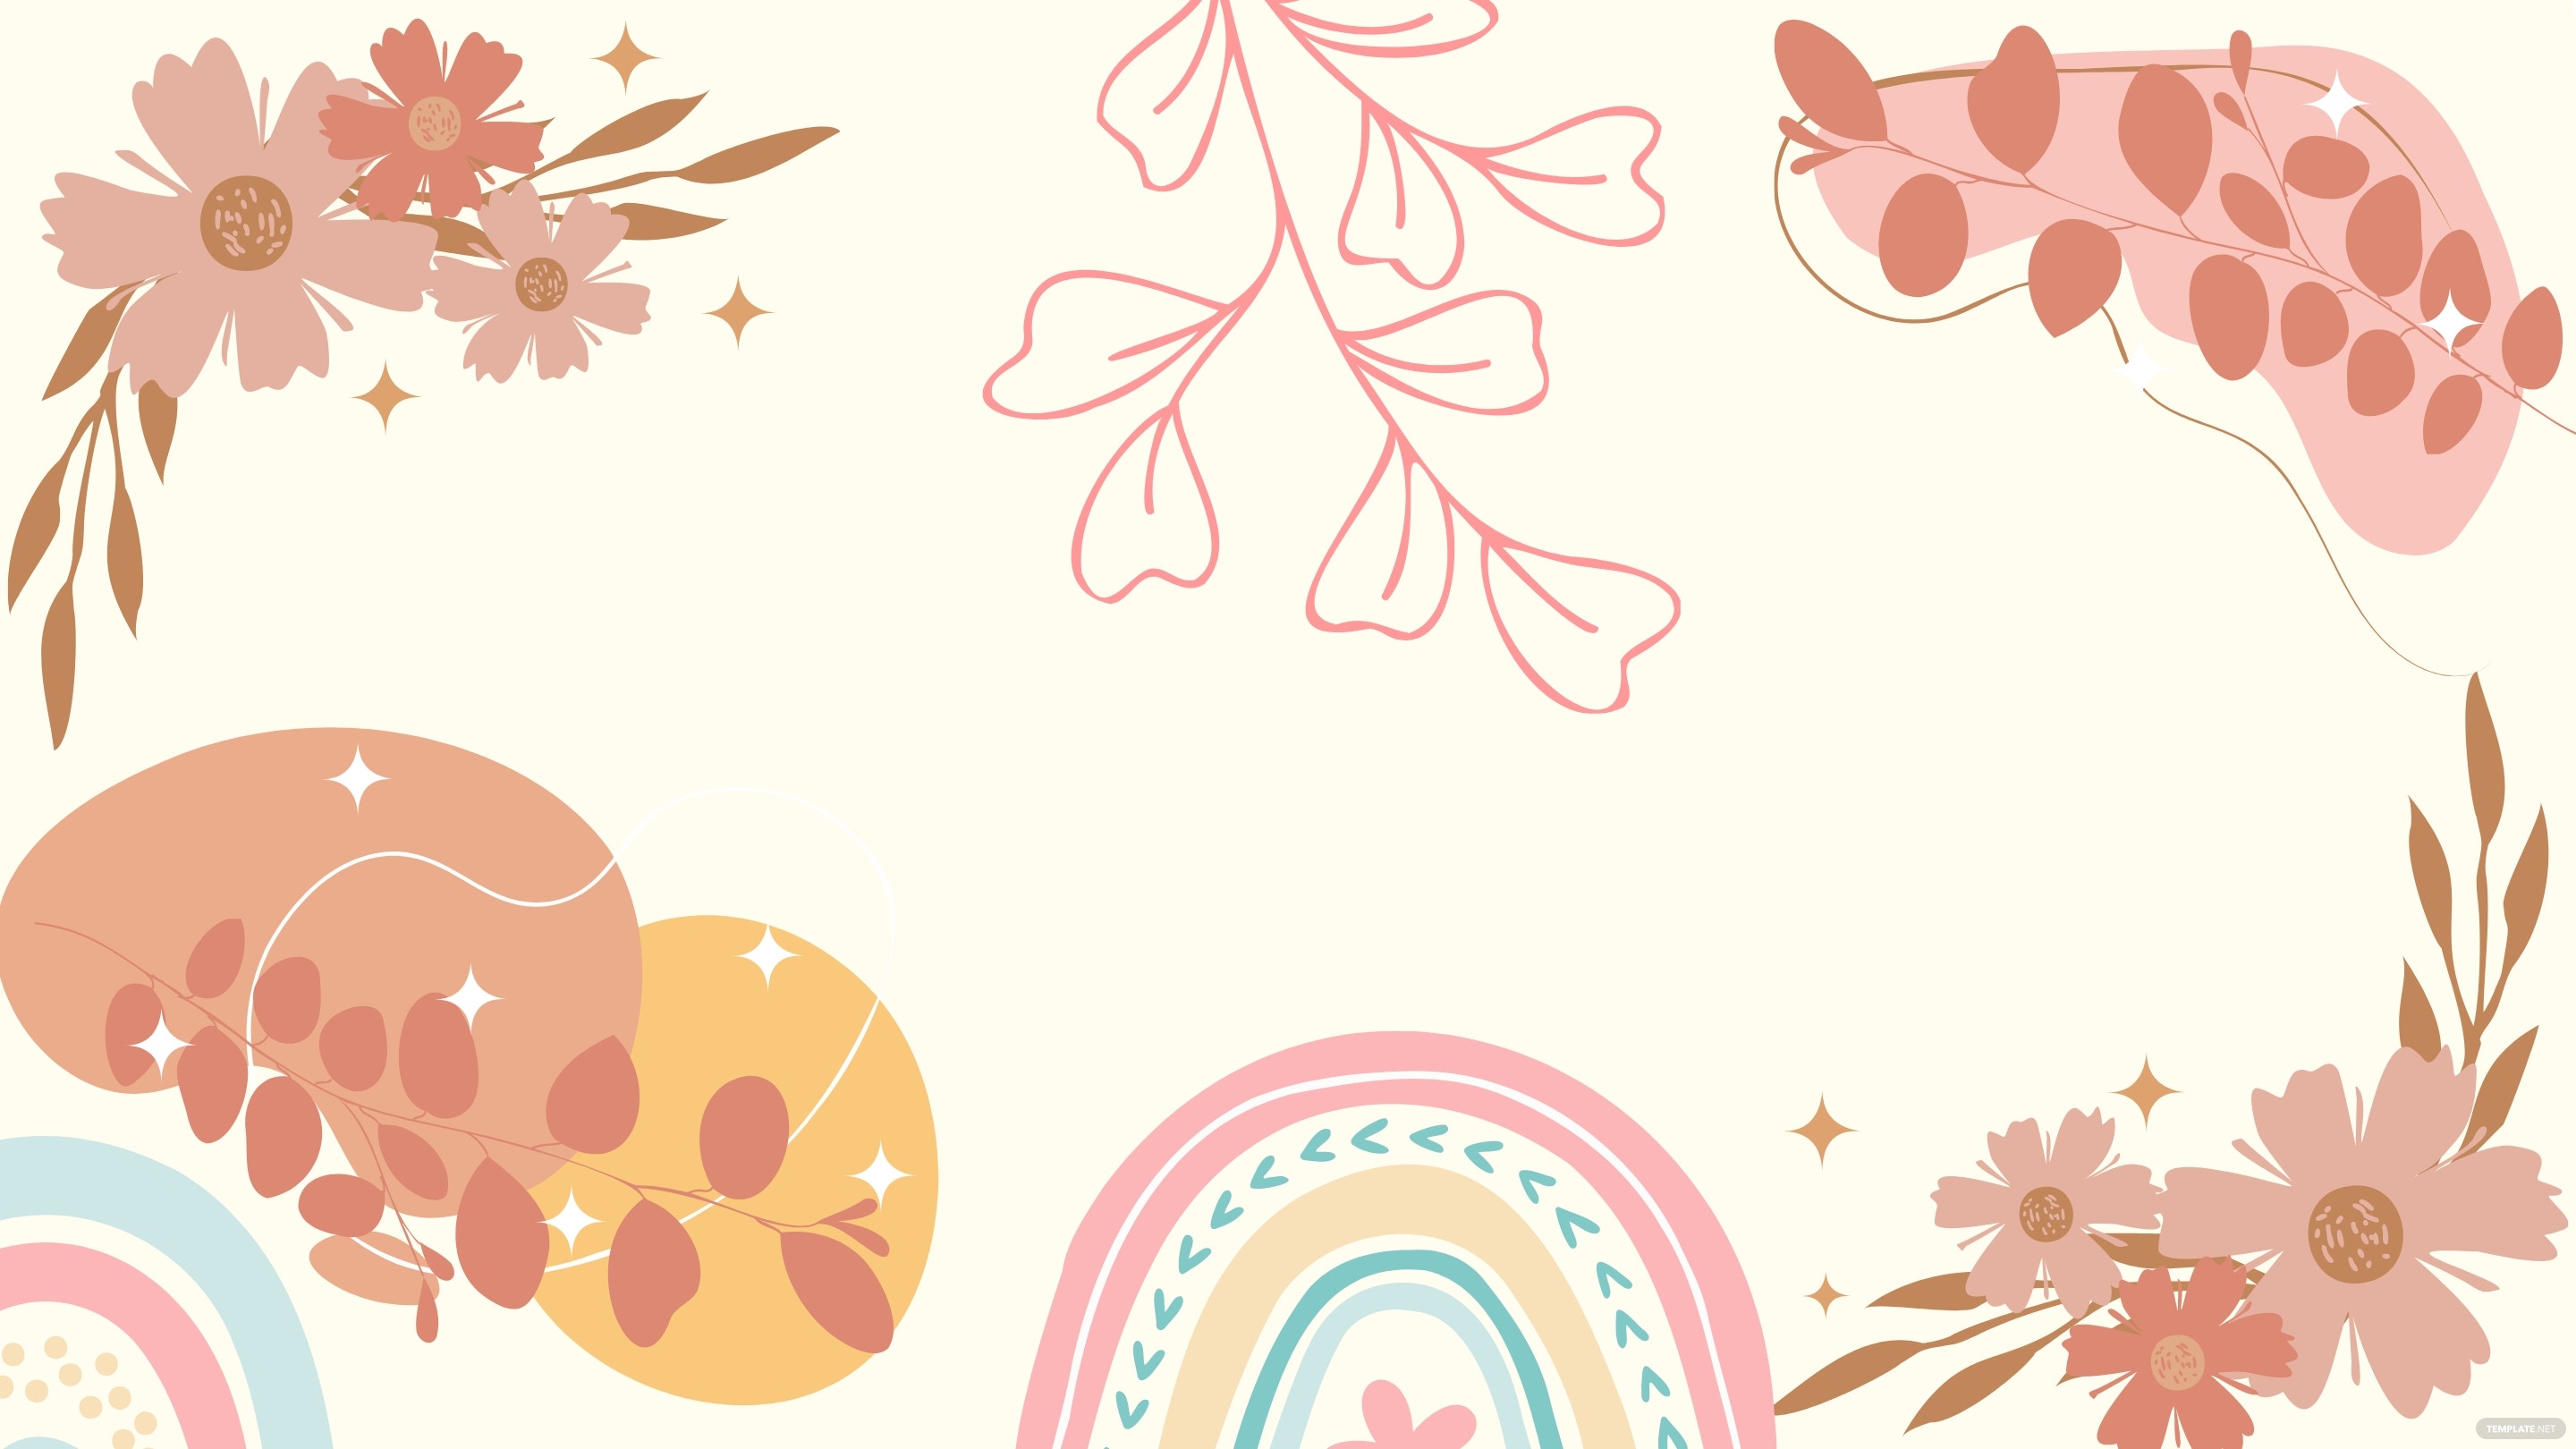 Free Boho Pastel Background, Illustrator, JPG, PNG, SVG